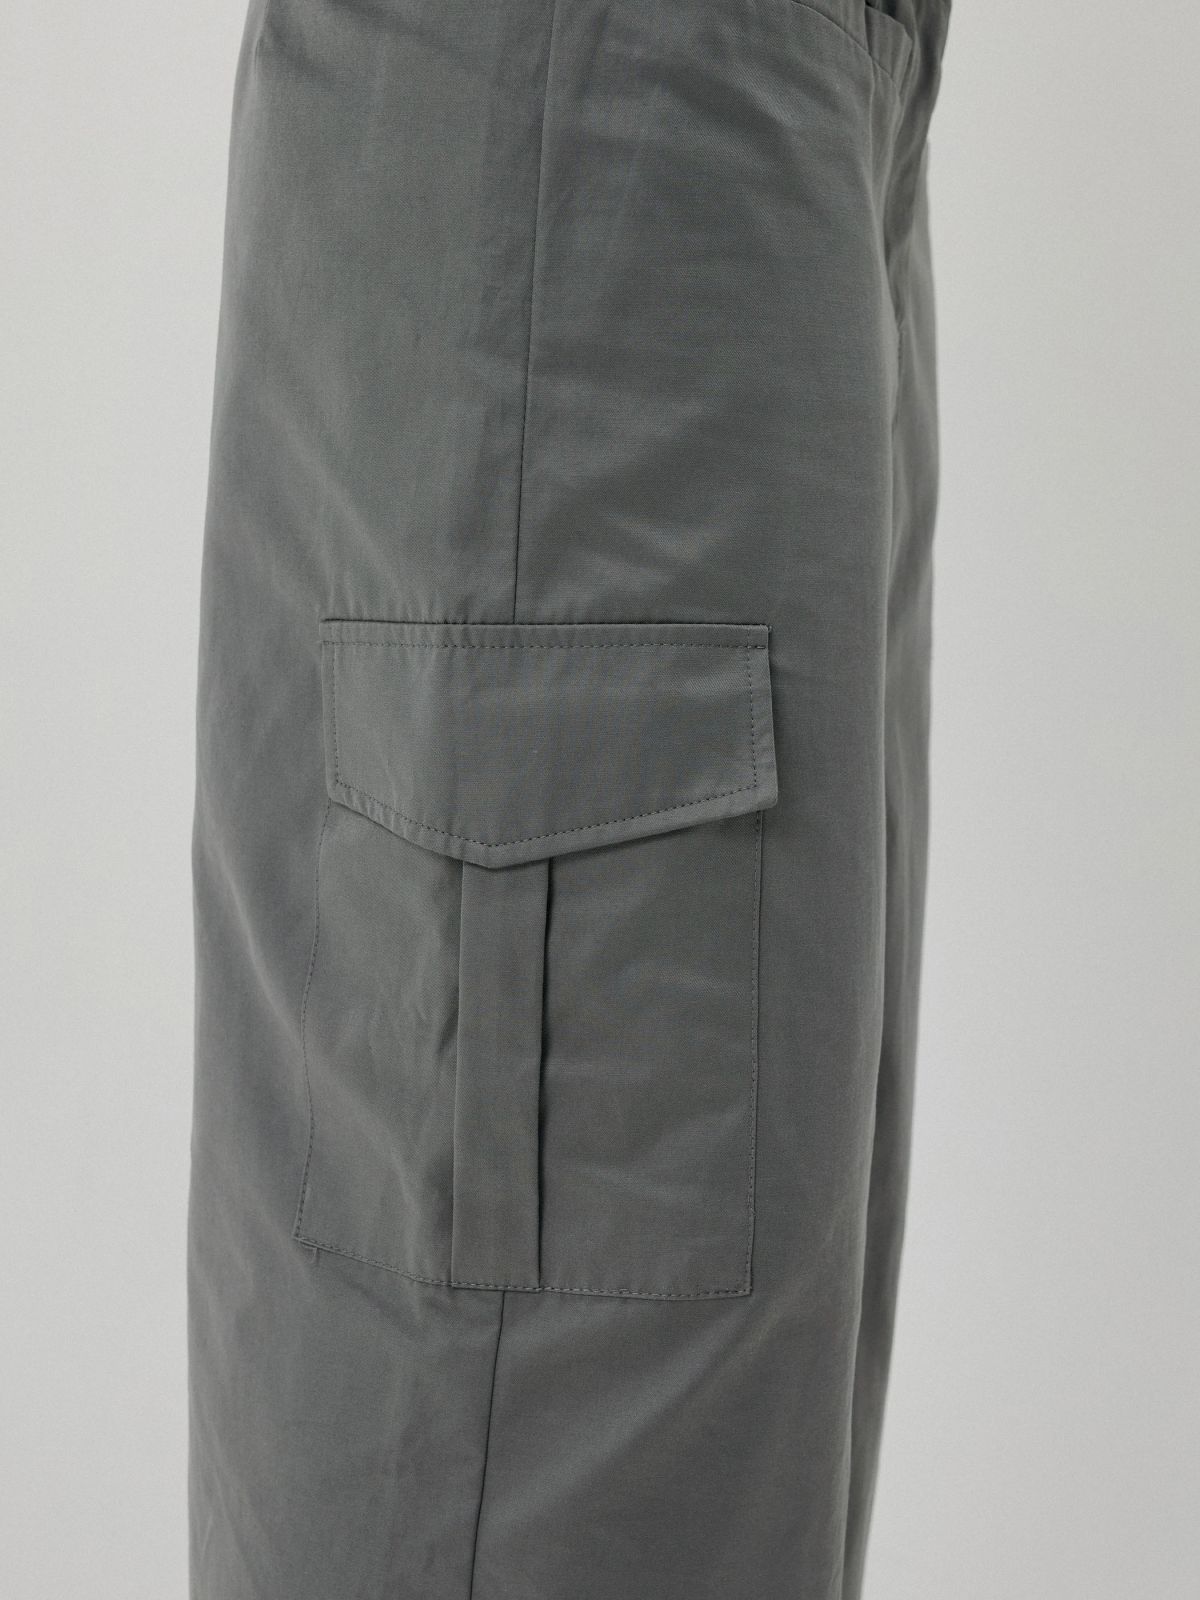  חצאית מקסי קרגו של YUVAL KASPIT